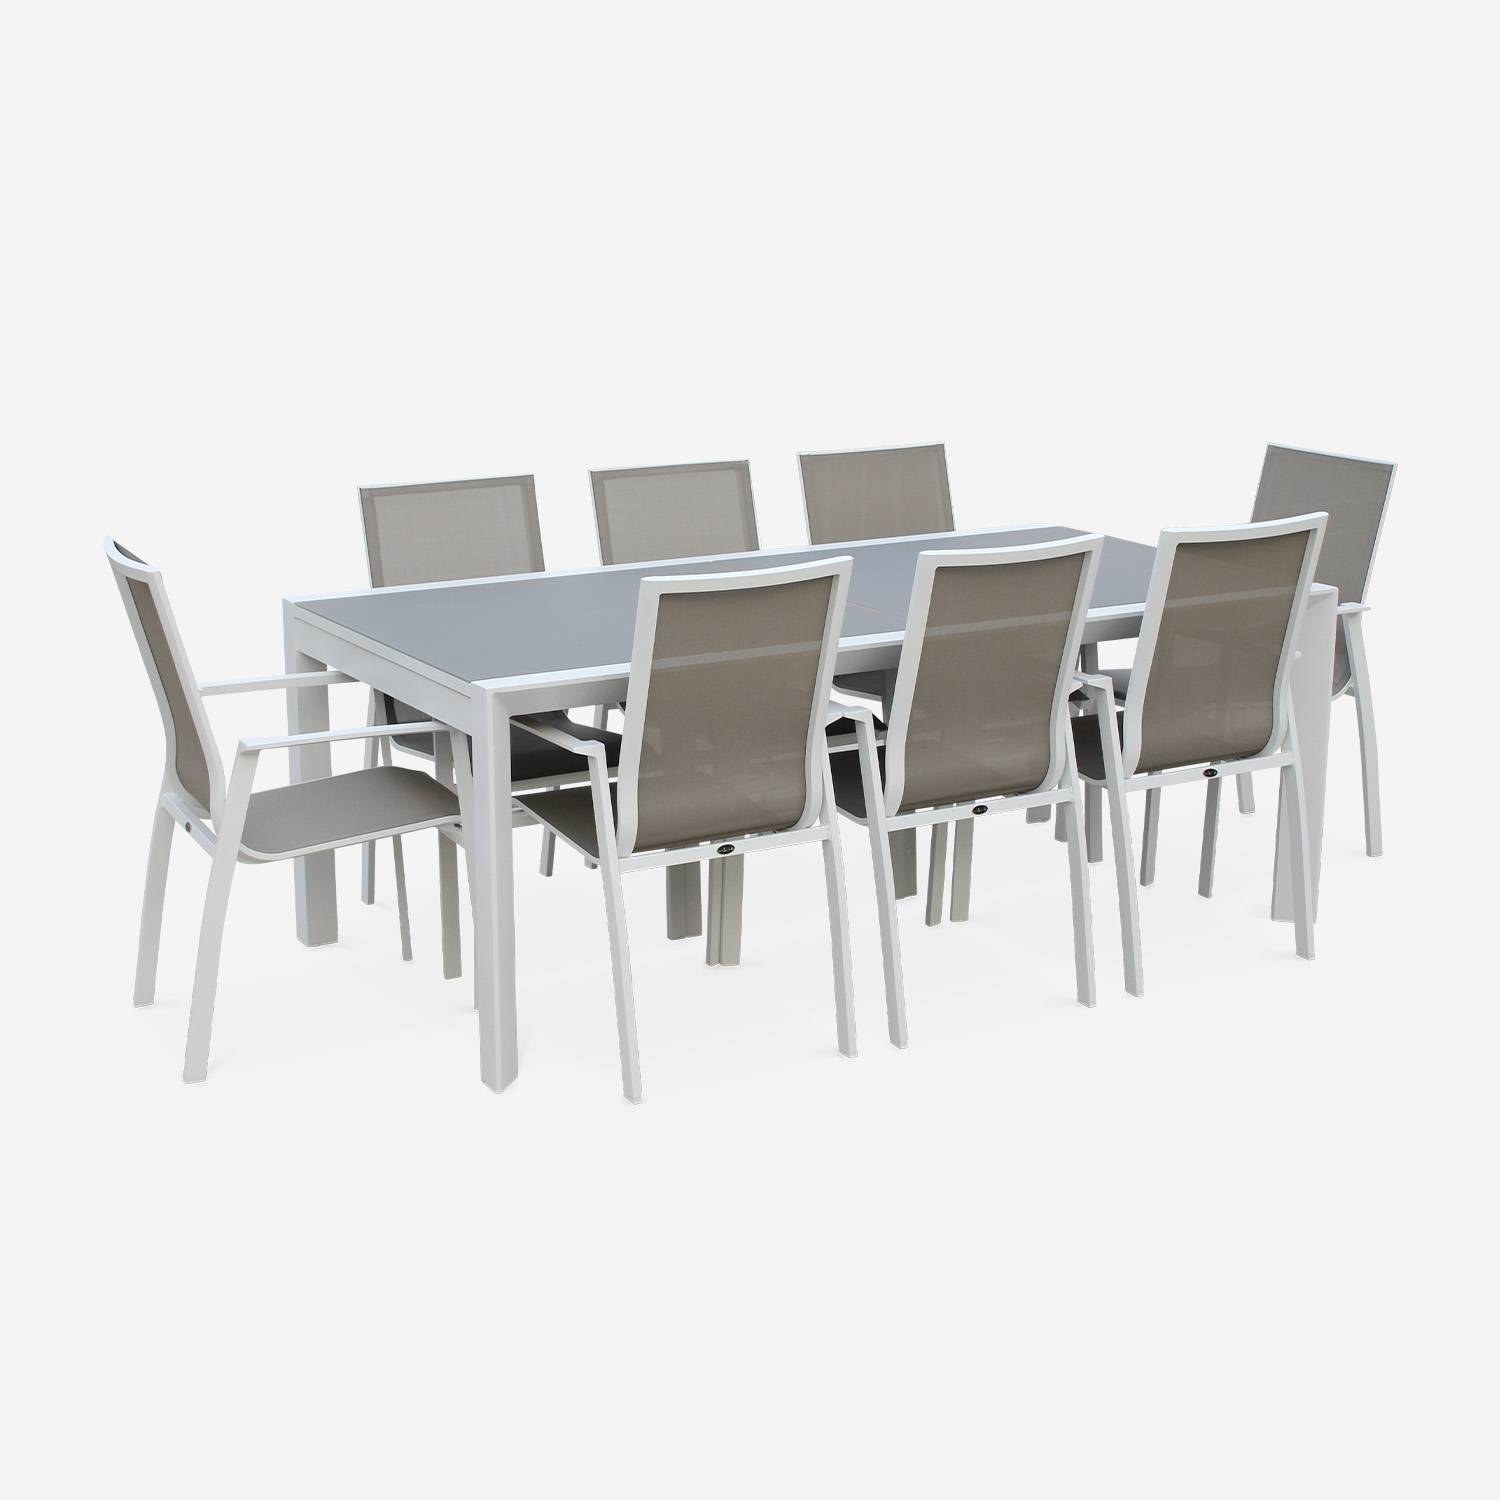 Tavolo da giardino con tavolo allungabile - modello: Washington, colore: Talpa - Tavolo in alluminio, dimensioni: 200/300cm, ripiano in vetro smerigliato, prolunga e 8 poltrone in textilene,sweeek,Photo3